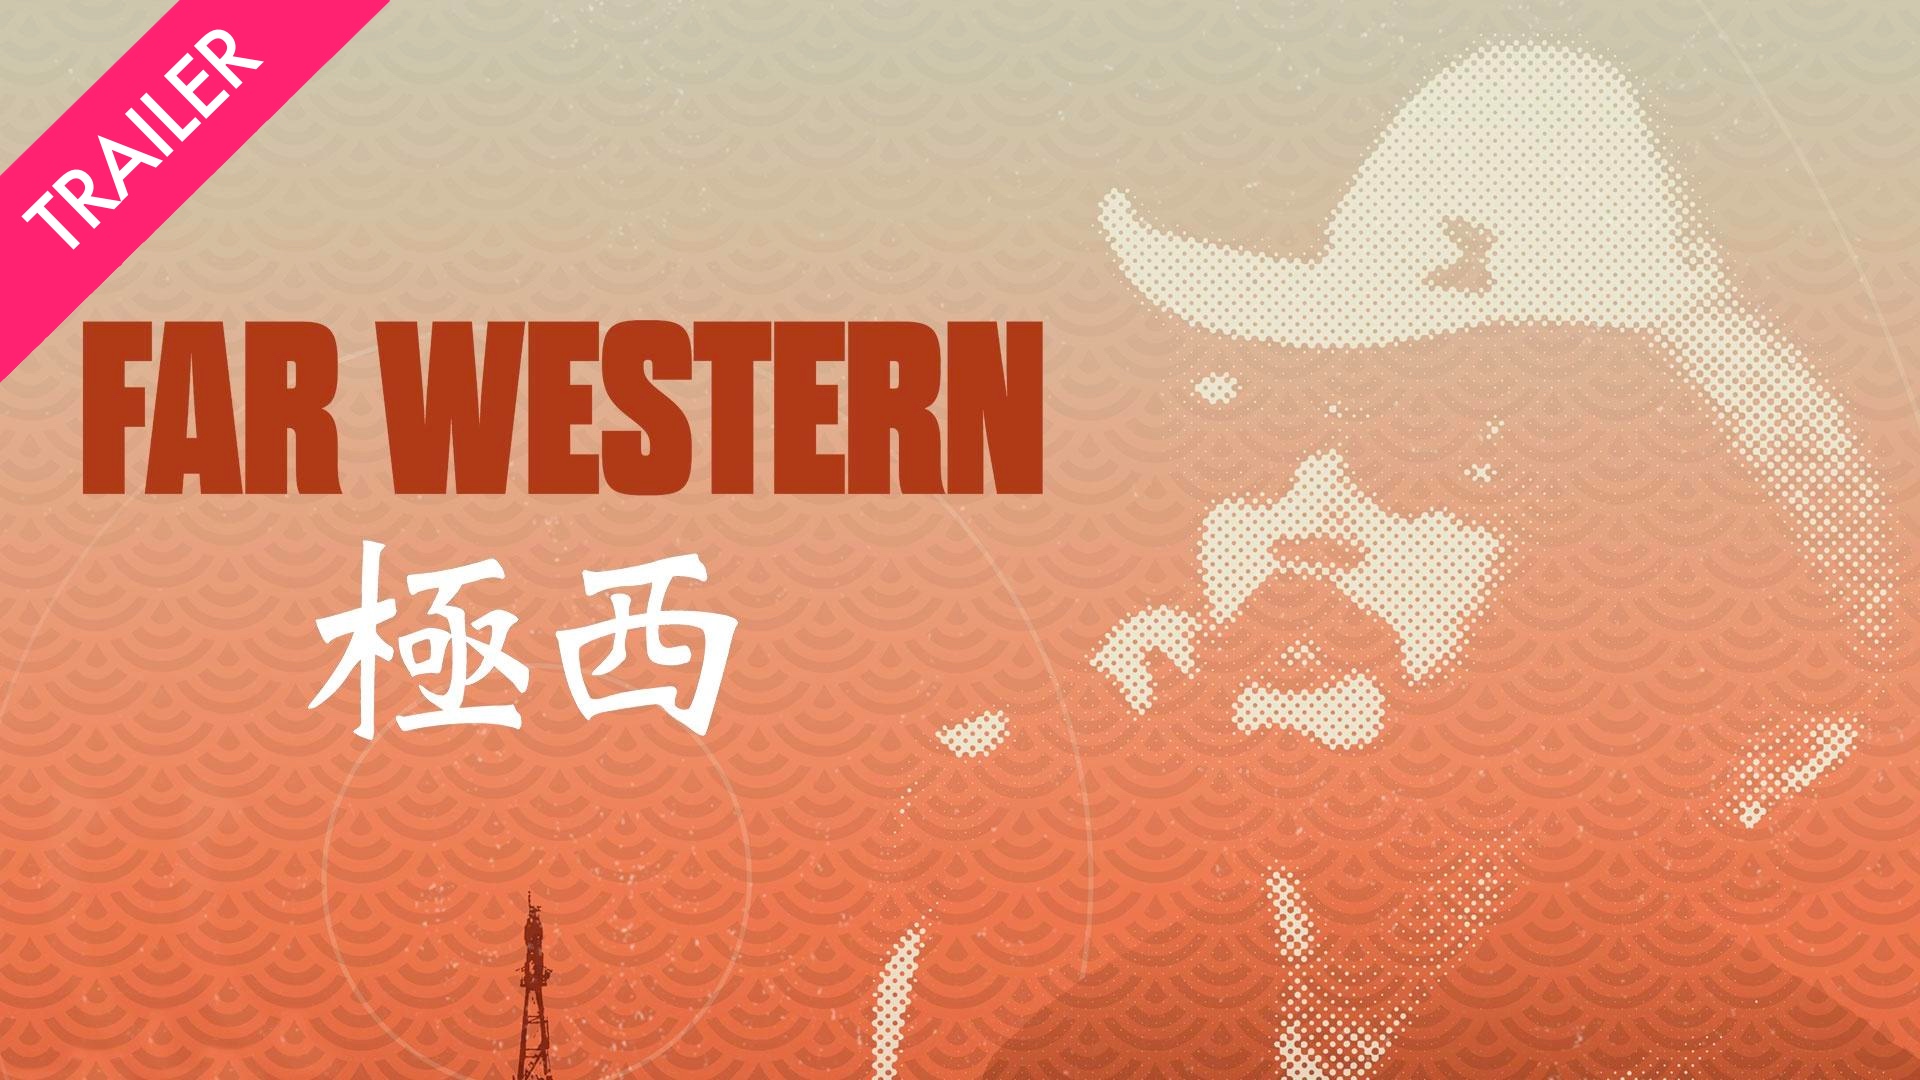 Far Western